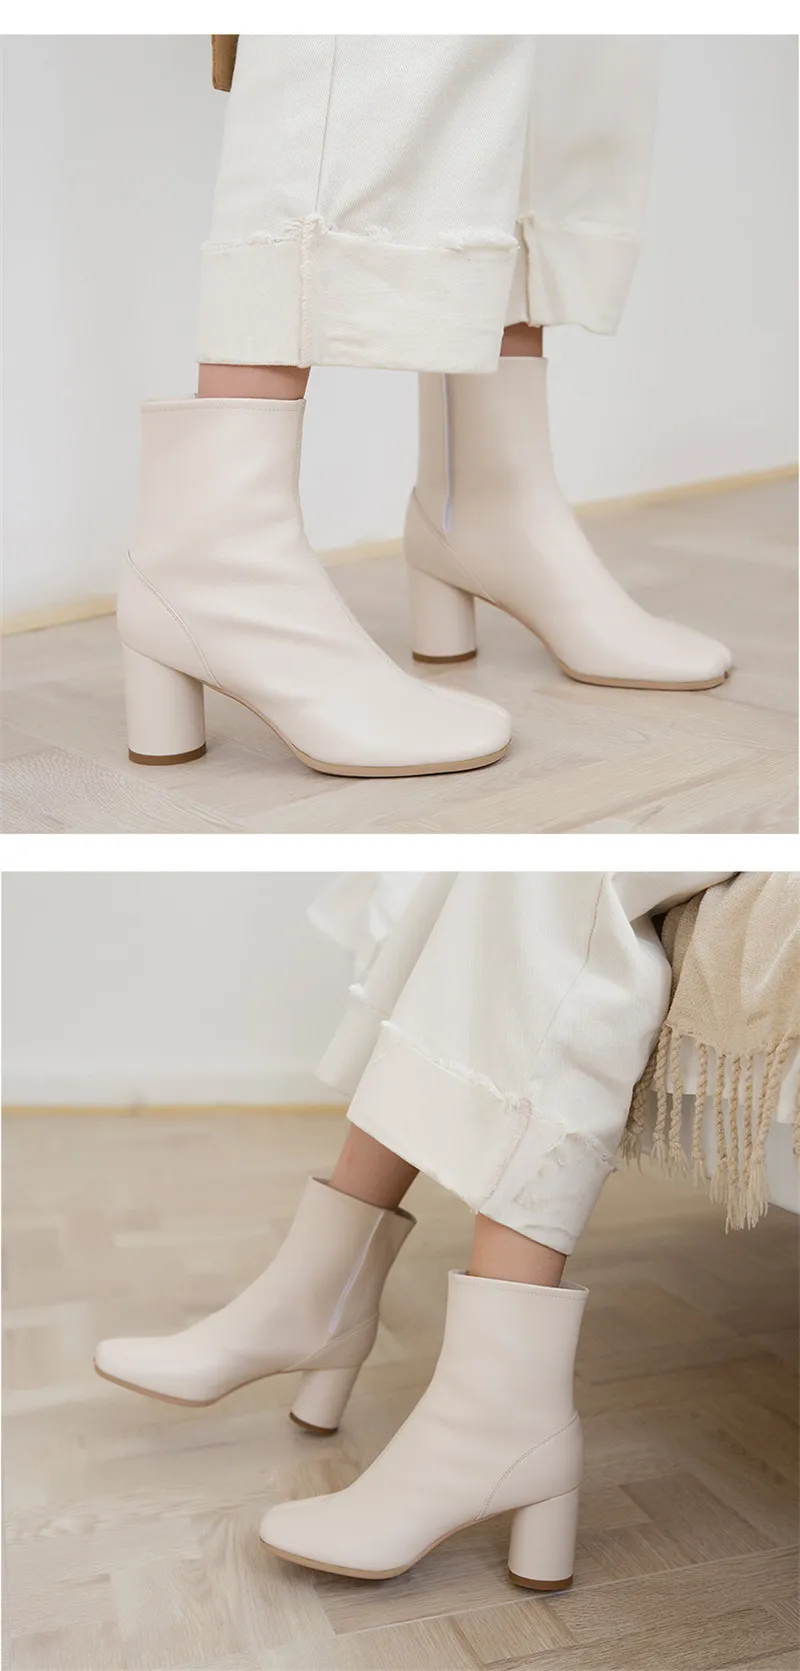 HKJL/сезон весна-осень; тонкие ботинки; женская обувь на толстом каблуке; Новинка года; обувь с раздельным носком; кожаные полусапожки; Ботинки martin на высоком каблуке; Z070